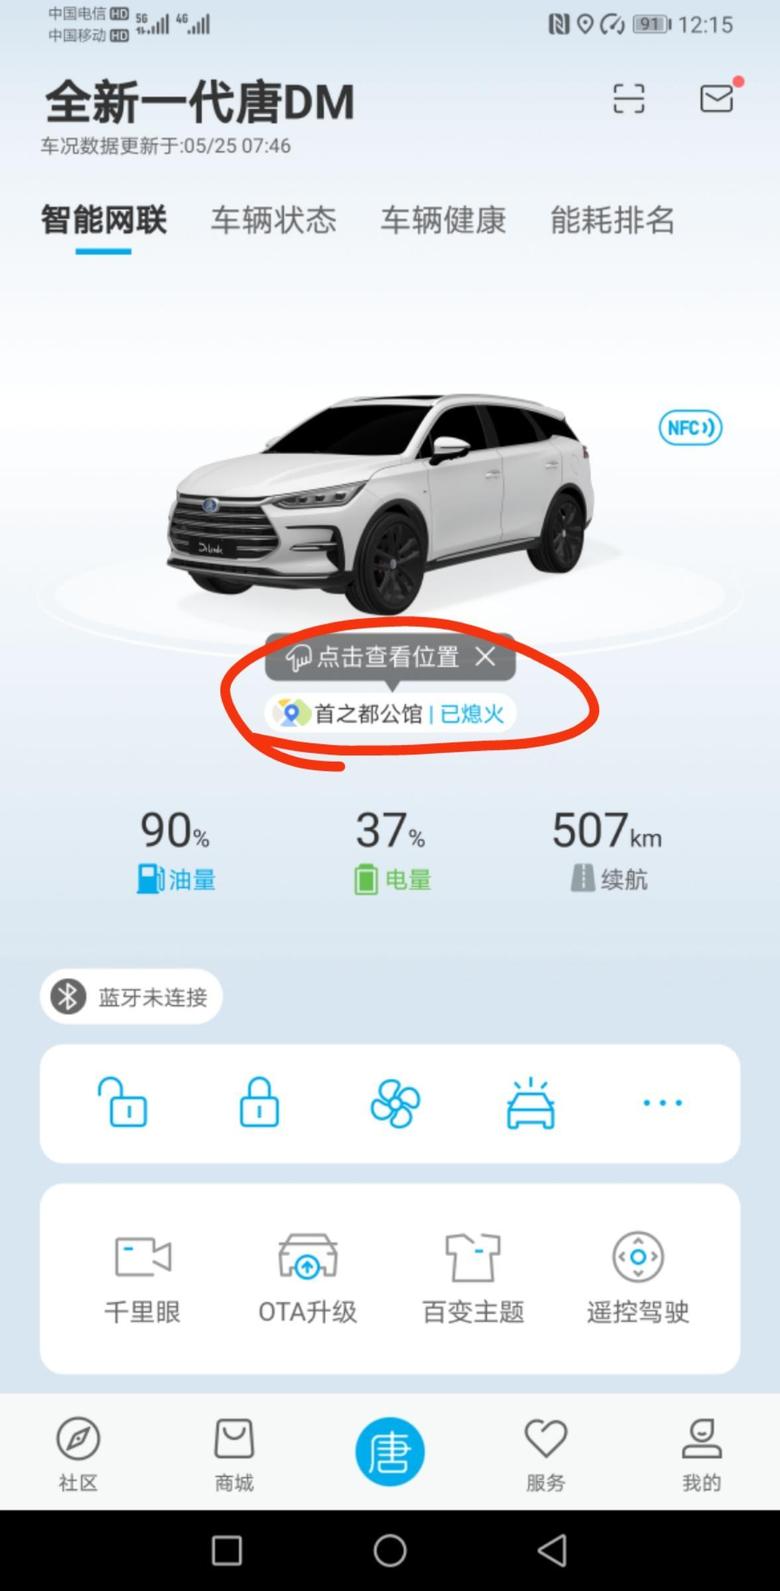 唐dm 我家LD也在手机上下载了“比亚迪汽车”app软件，上面也会显示车辆的实时位置，请问一下这个位置可以取消吗?